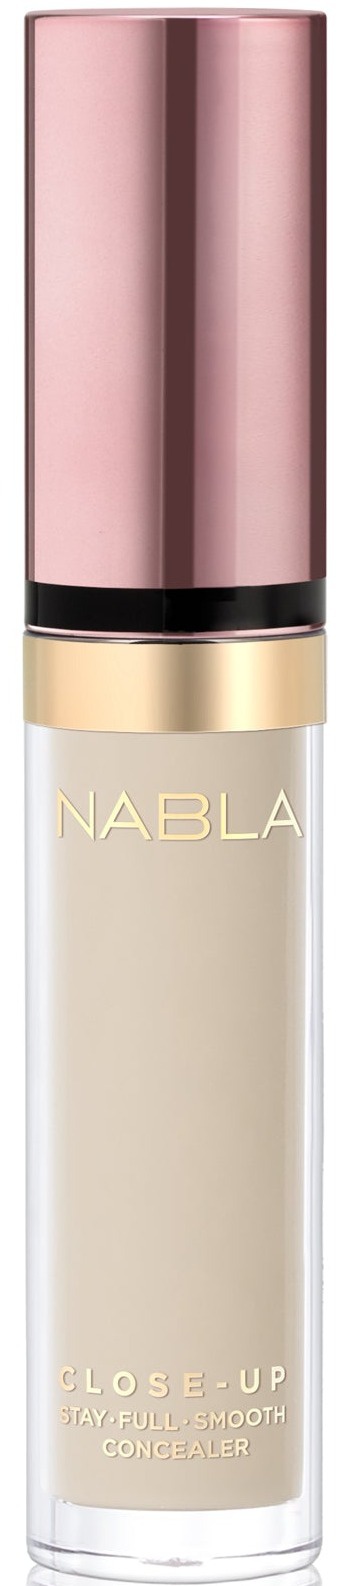 Nabla Close-up Concealer